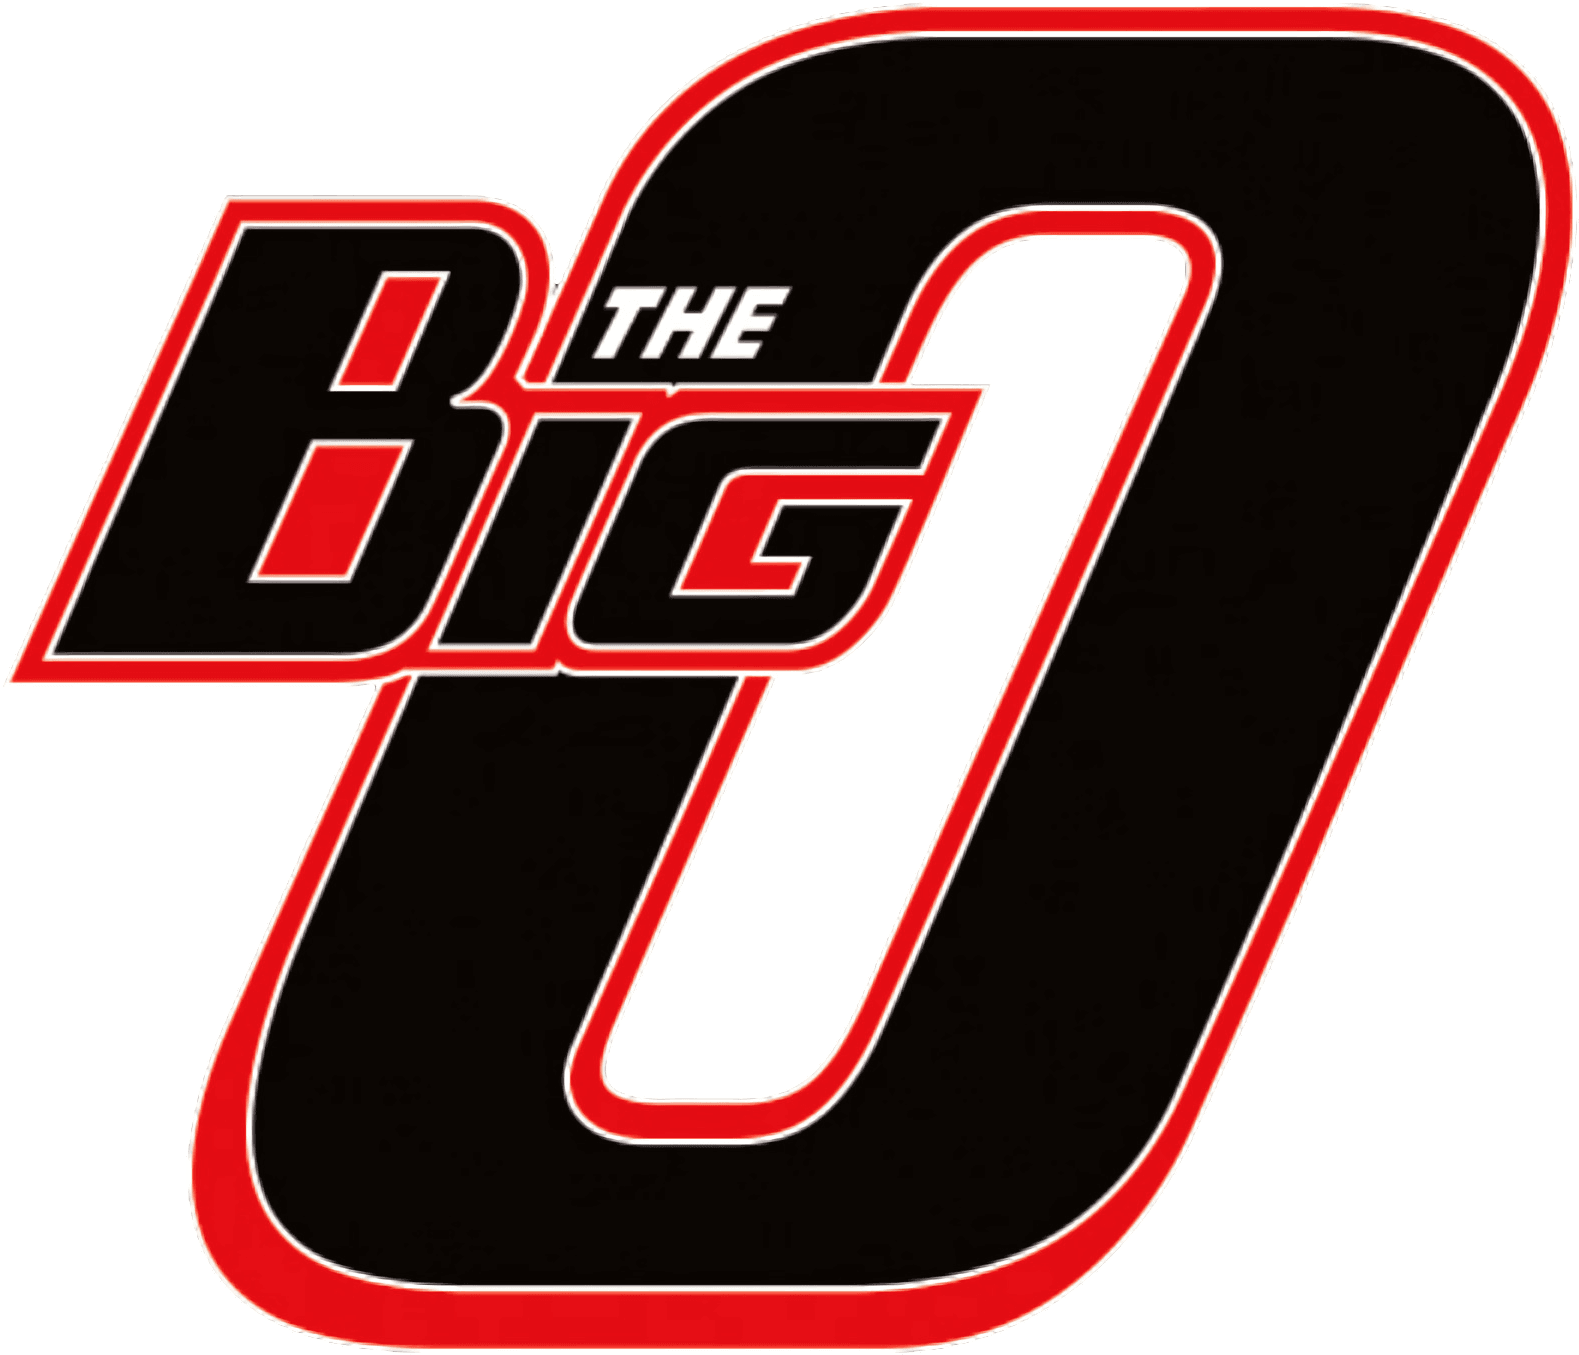 The Big O logo